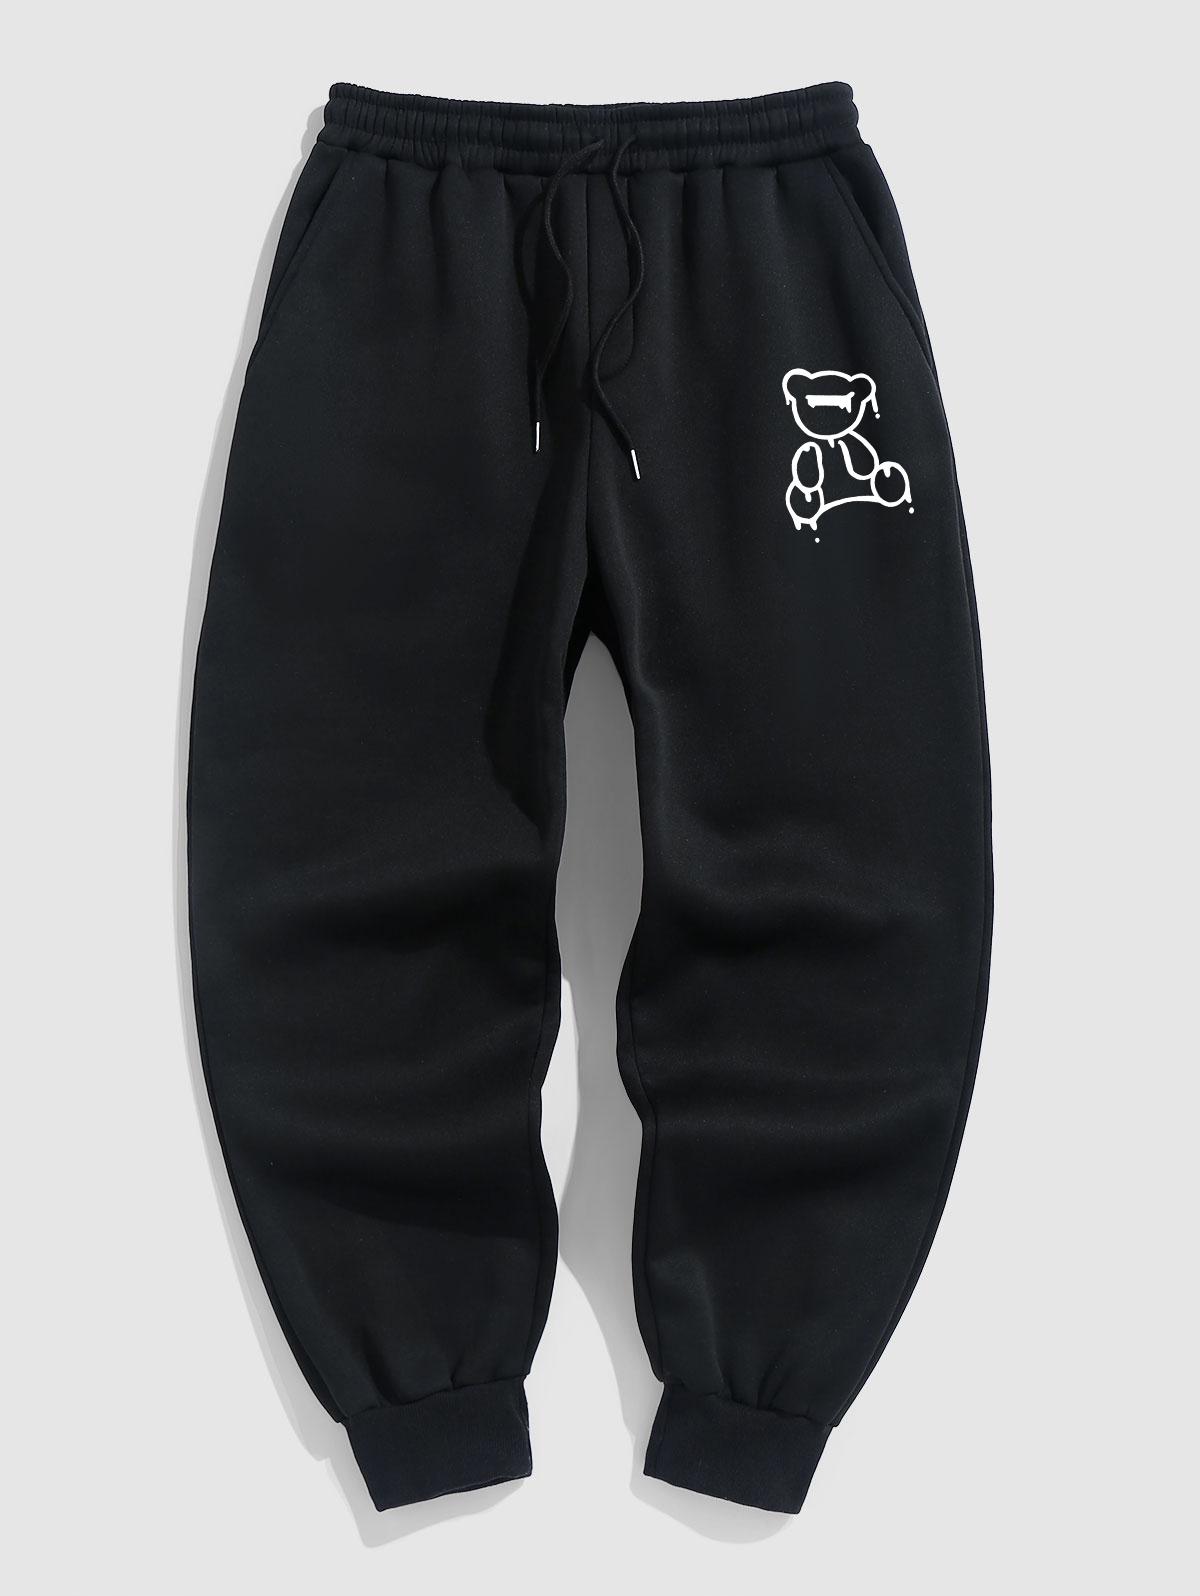 ZAFUL Men's Drippy Bear Pattern Fleece Thermal Lined Jogger Sweatpants M Black